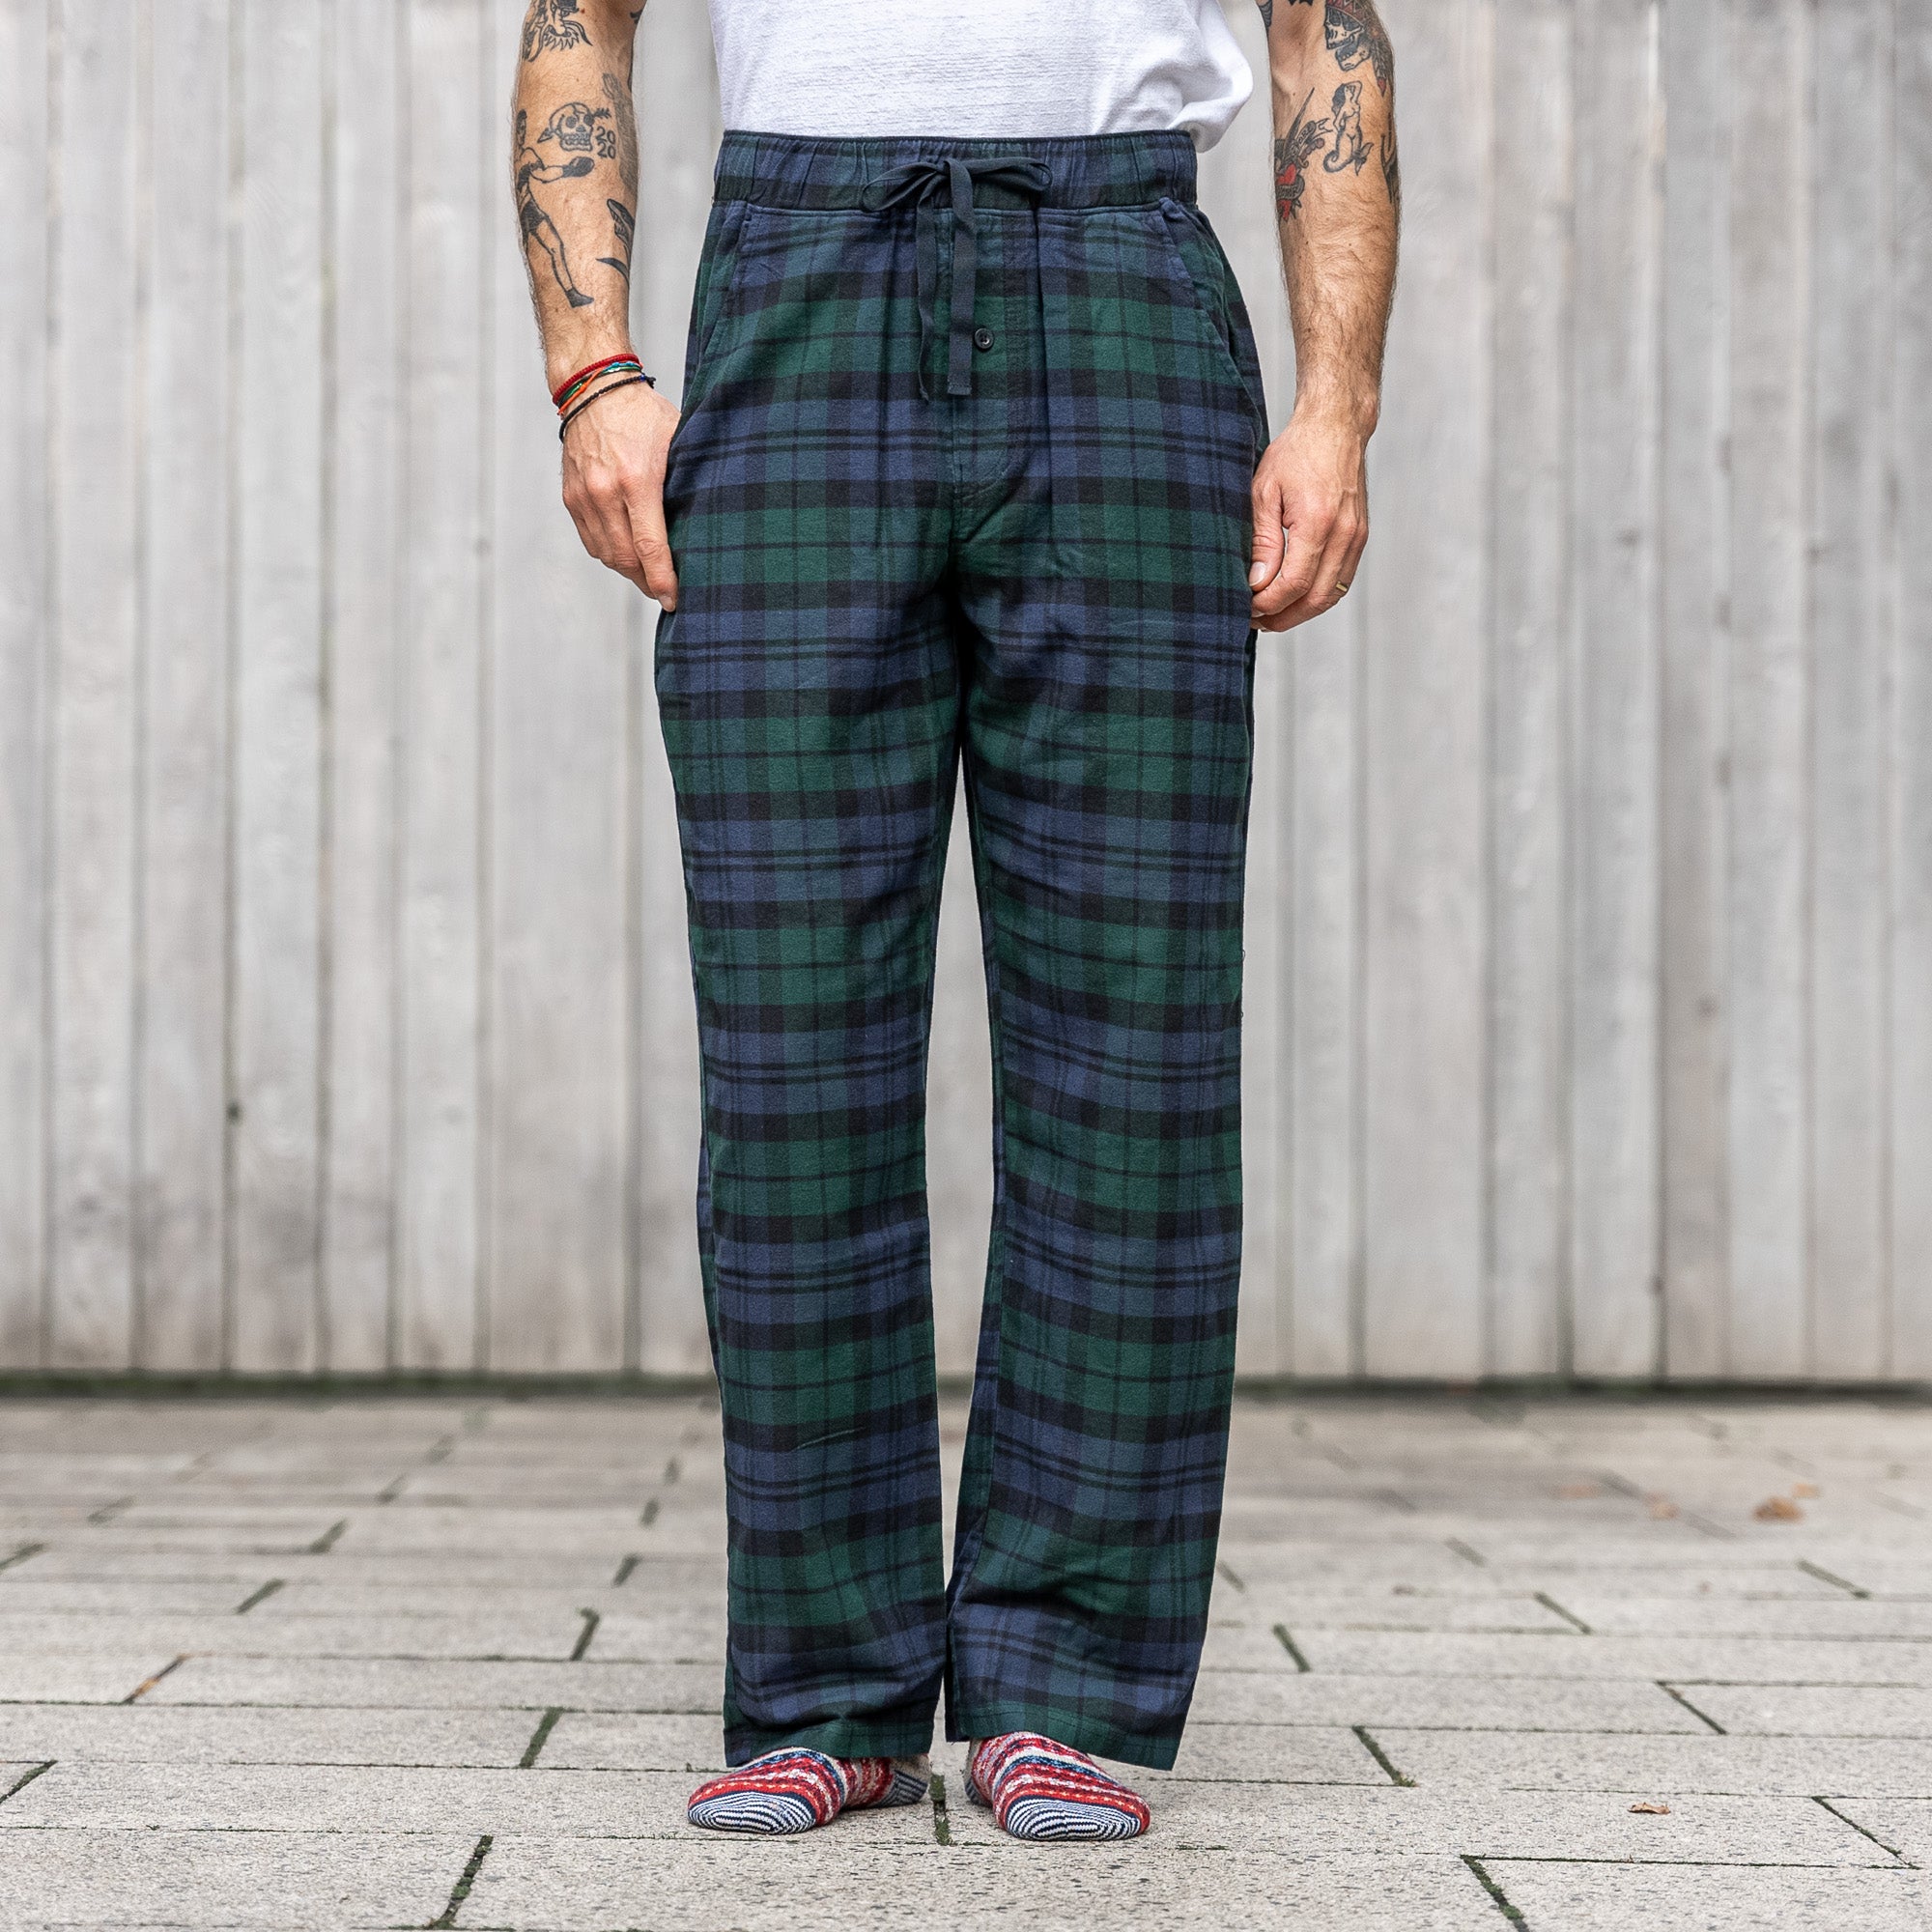 Regular Fit Pajama Pants - Dark green/plaid - Men